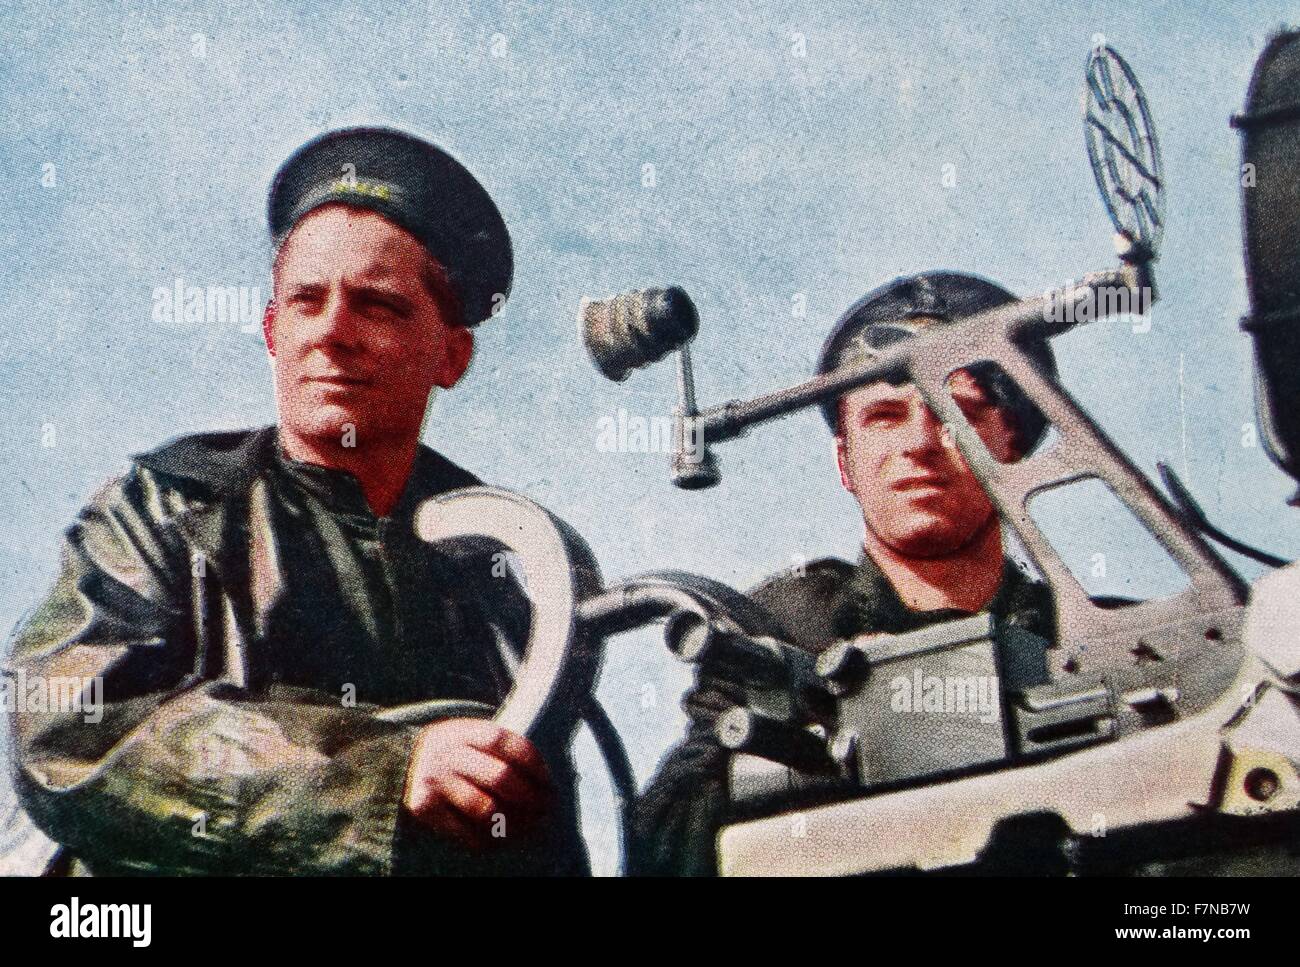 Farbfoto der "Gunners" mit zwei Tanks. Datiert 1941 Stockfoto